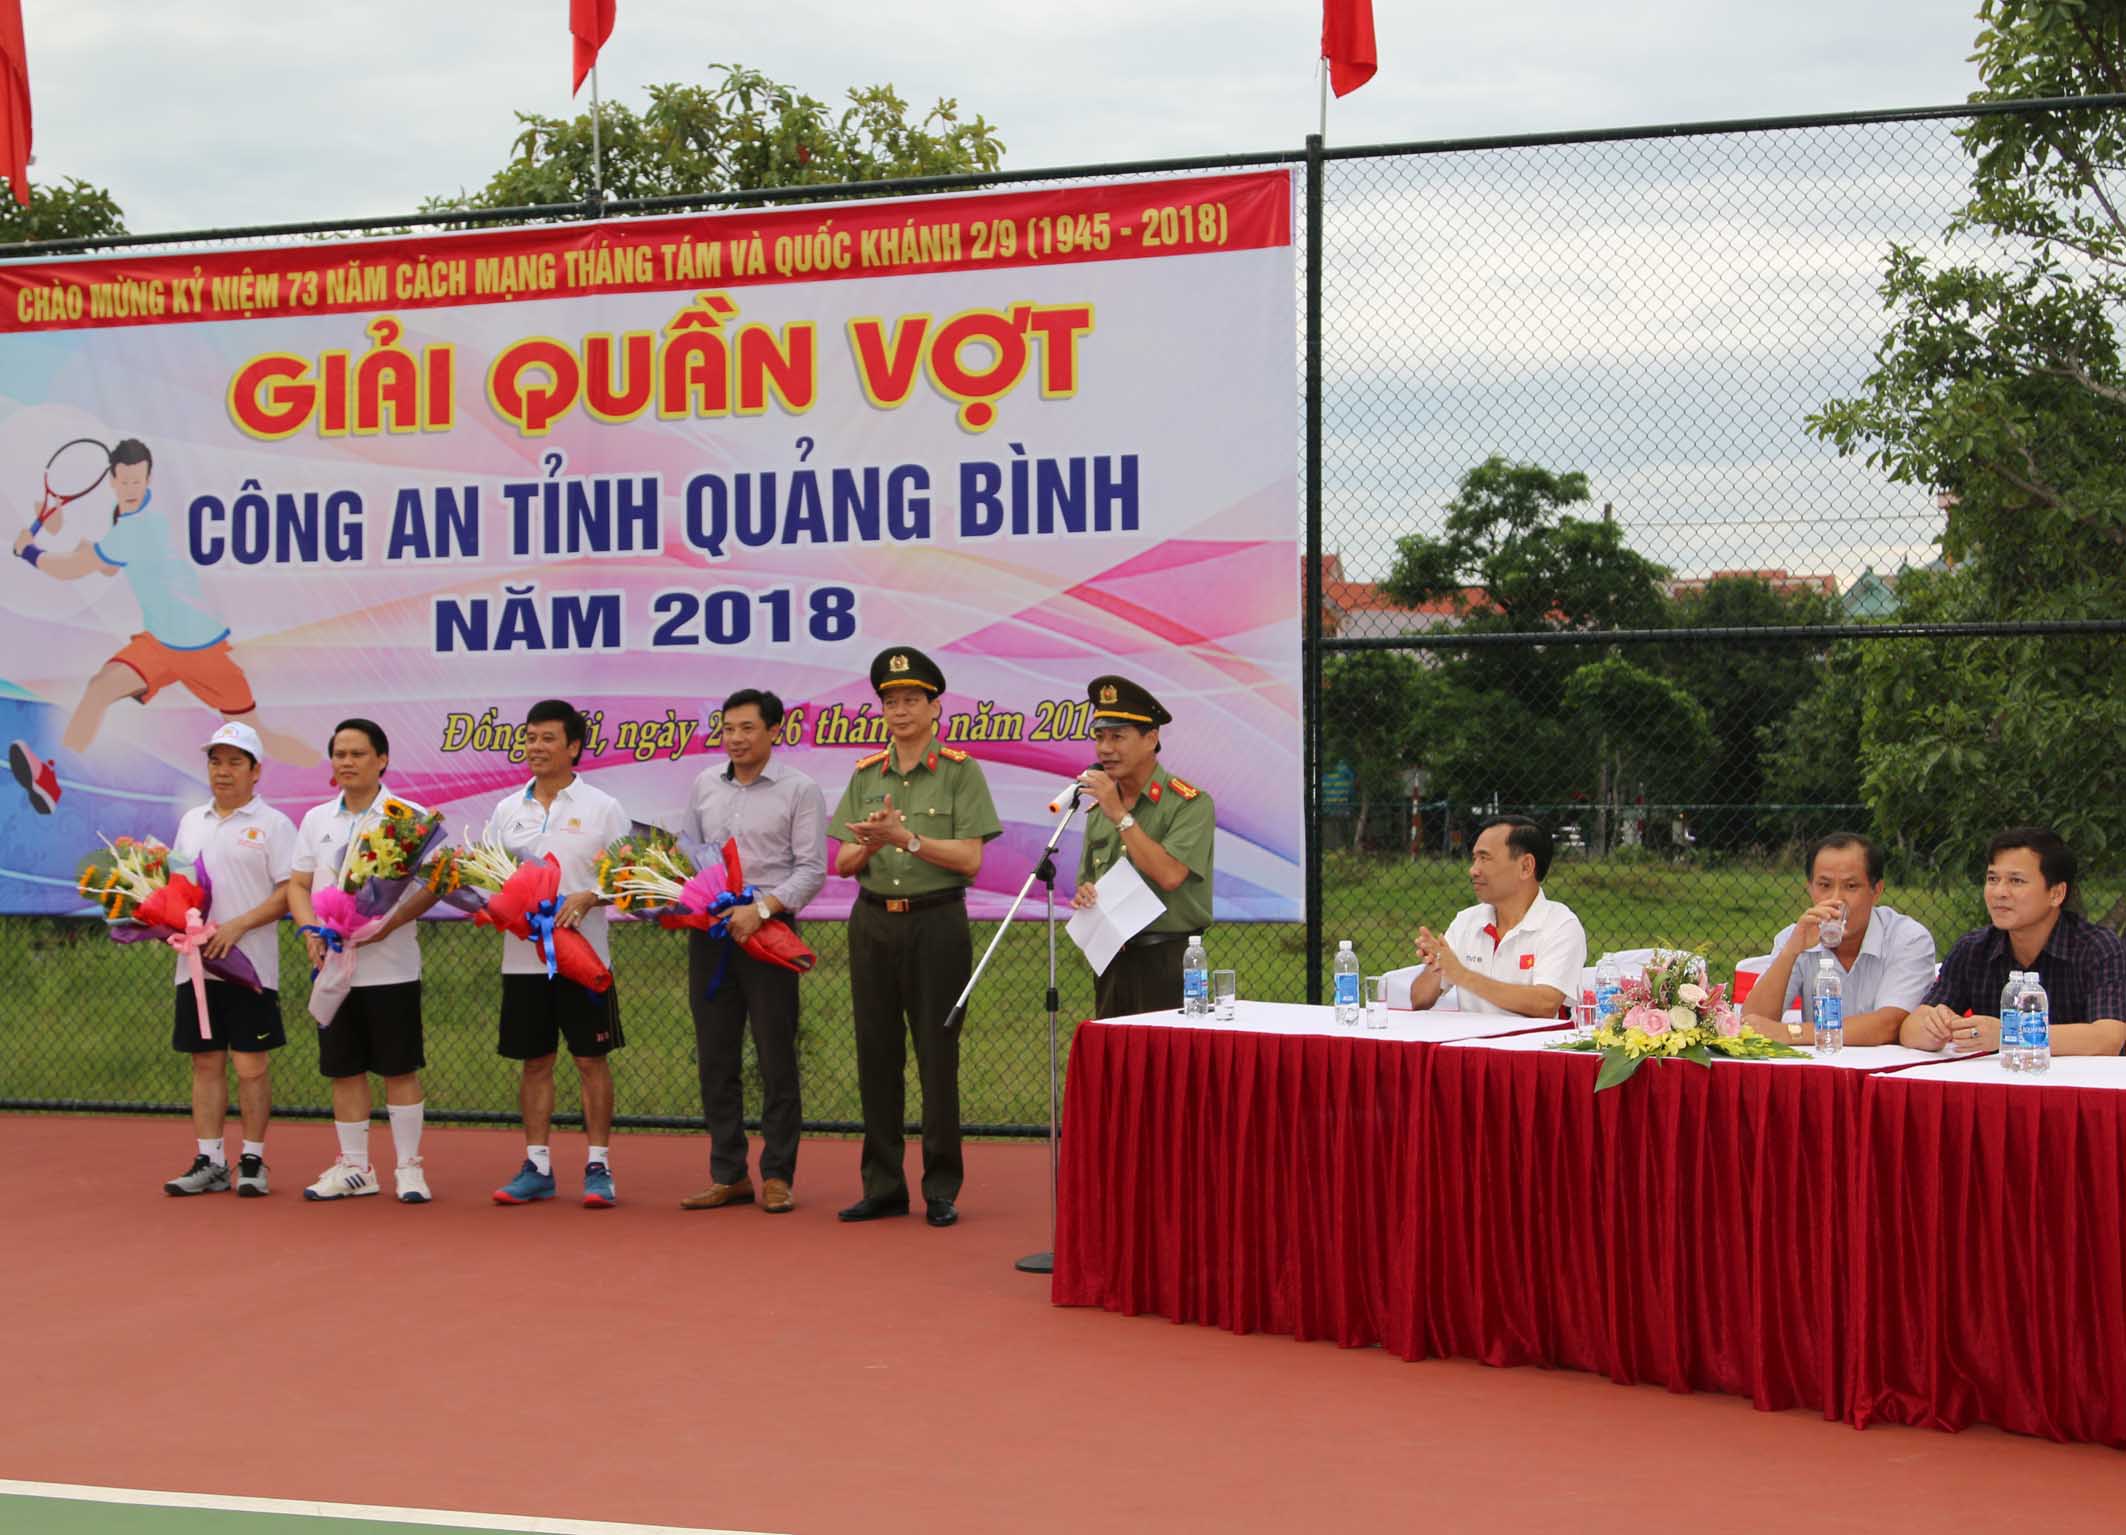 Công an tỉnh Quảng Bình tổ chức thành công giải quần vợt năm 2018